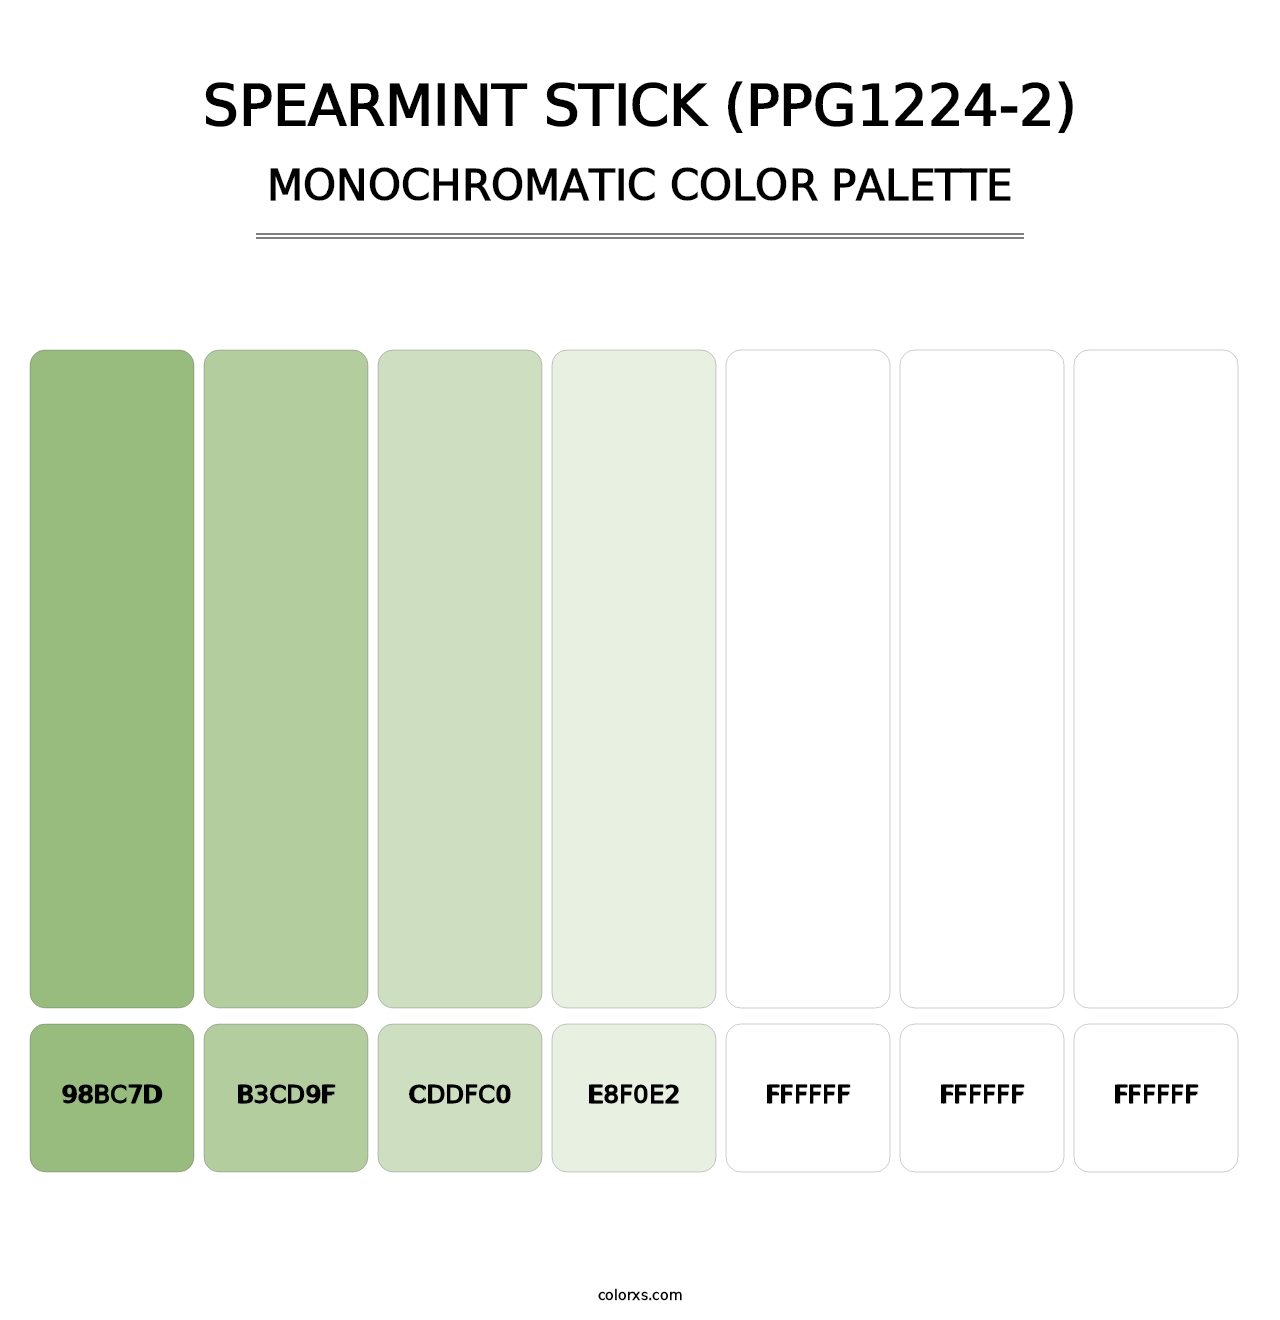 Spearmint Stick (PPG1224-2) - Monochromatic Color Palette